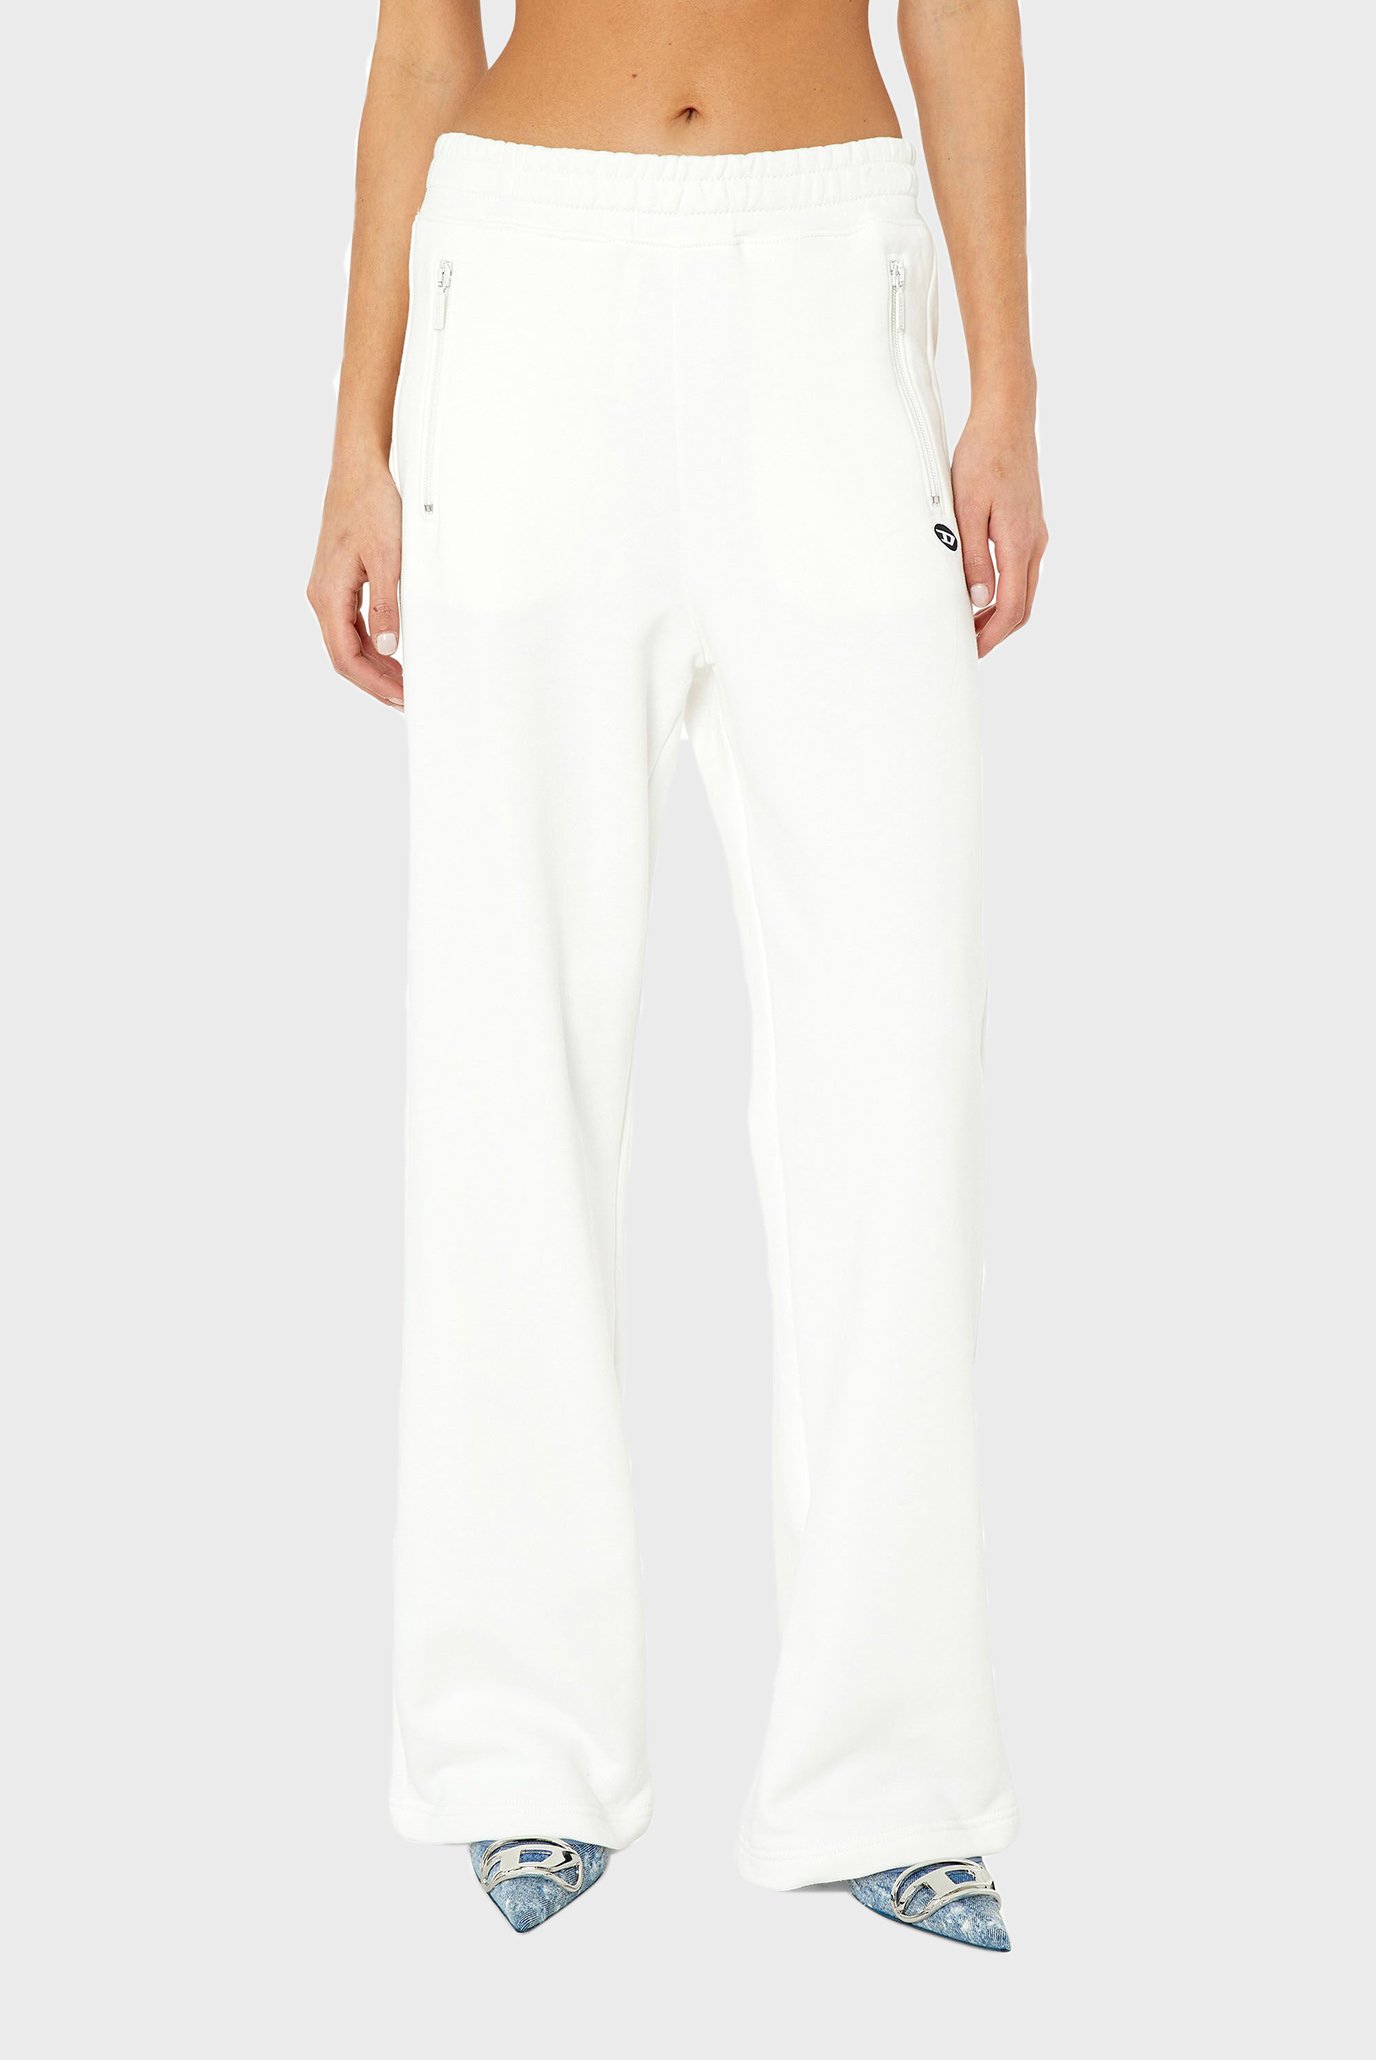 Жіночі білі спортивні штани P-ZAM-DOVAL-PJ 1